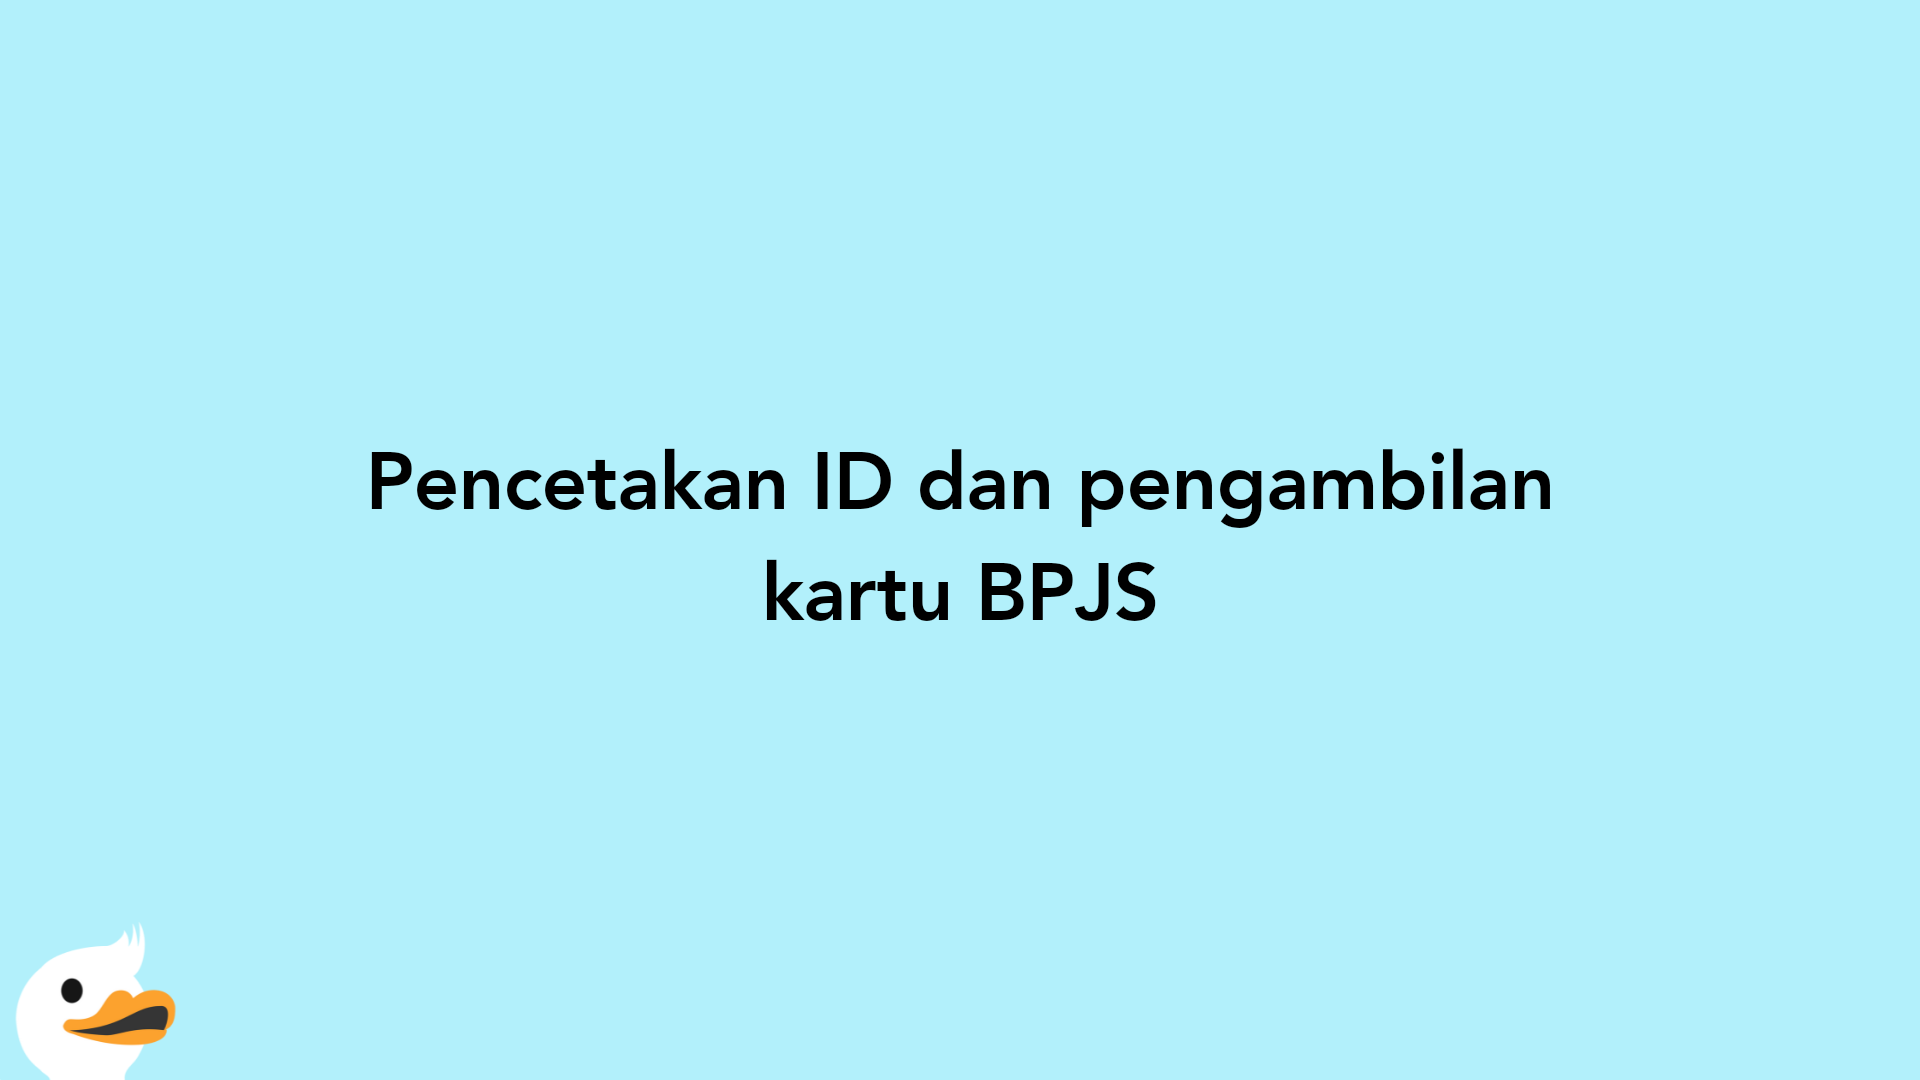 Pencetakan ID dan pengambilan kartu BPJS